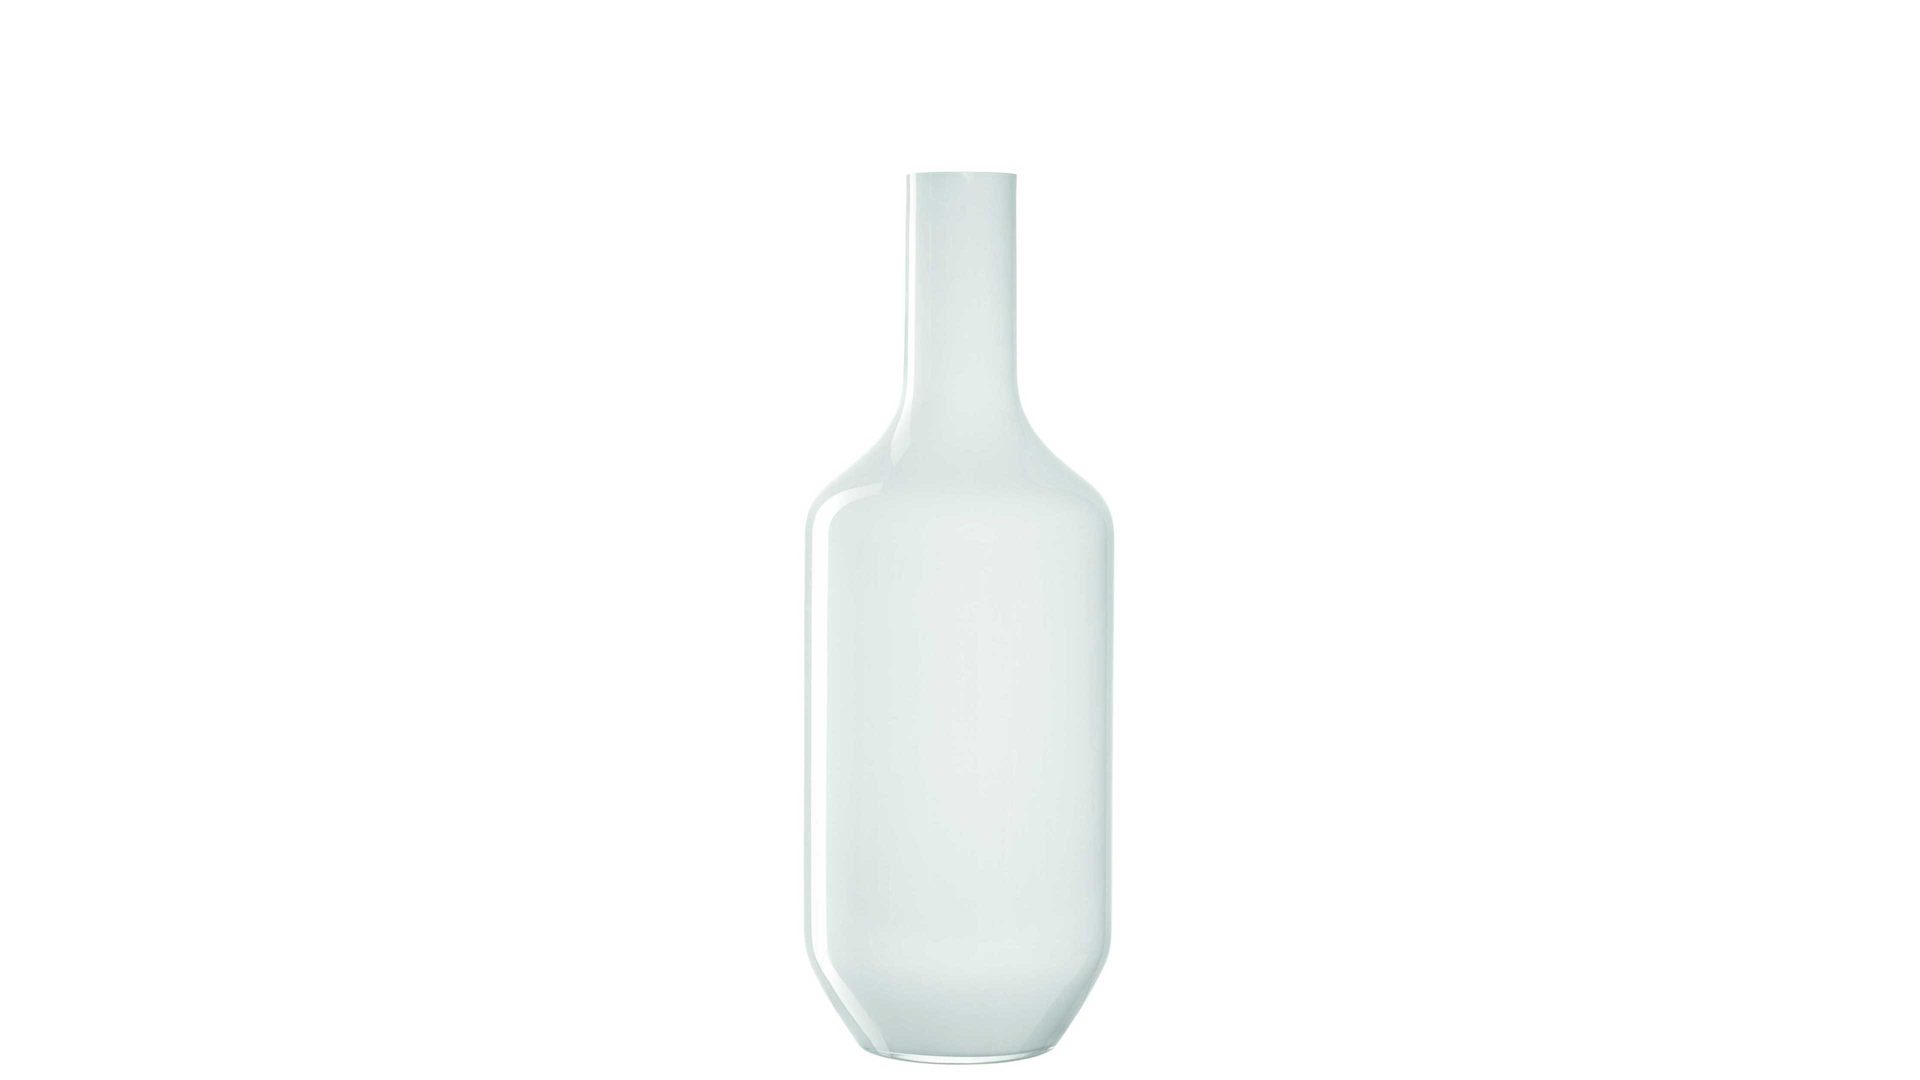 Vase Leonardo | glaskoch aus Glas in Weiß LEONARDO Vase Milano weißes Glas – Höhe ca. 50 cm